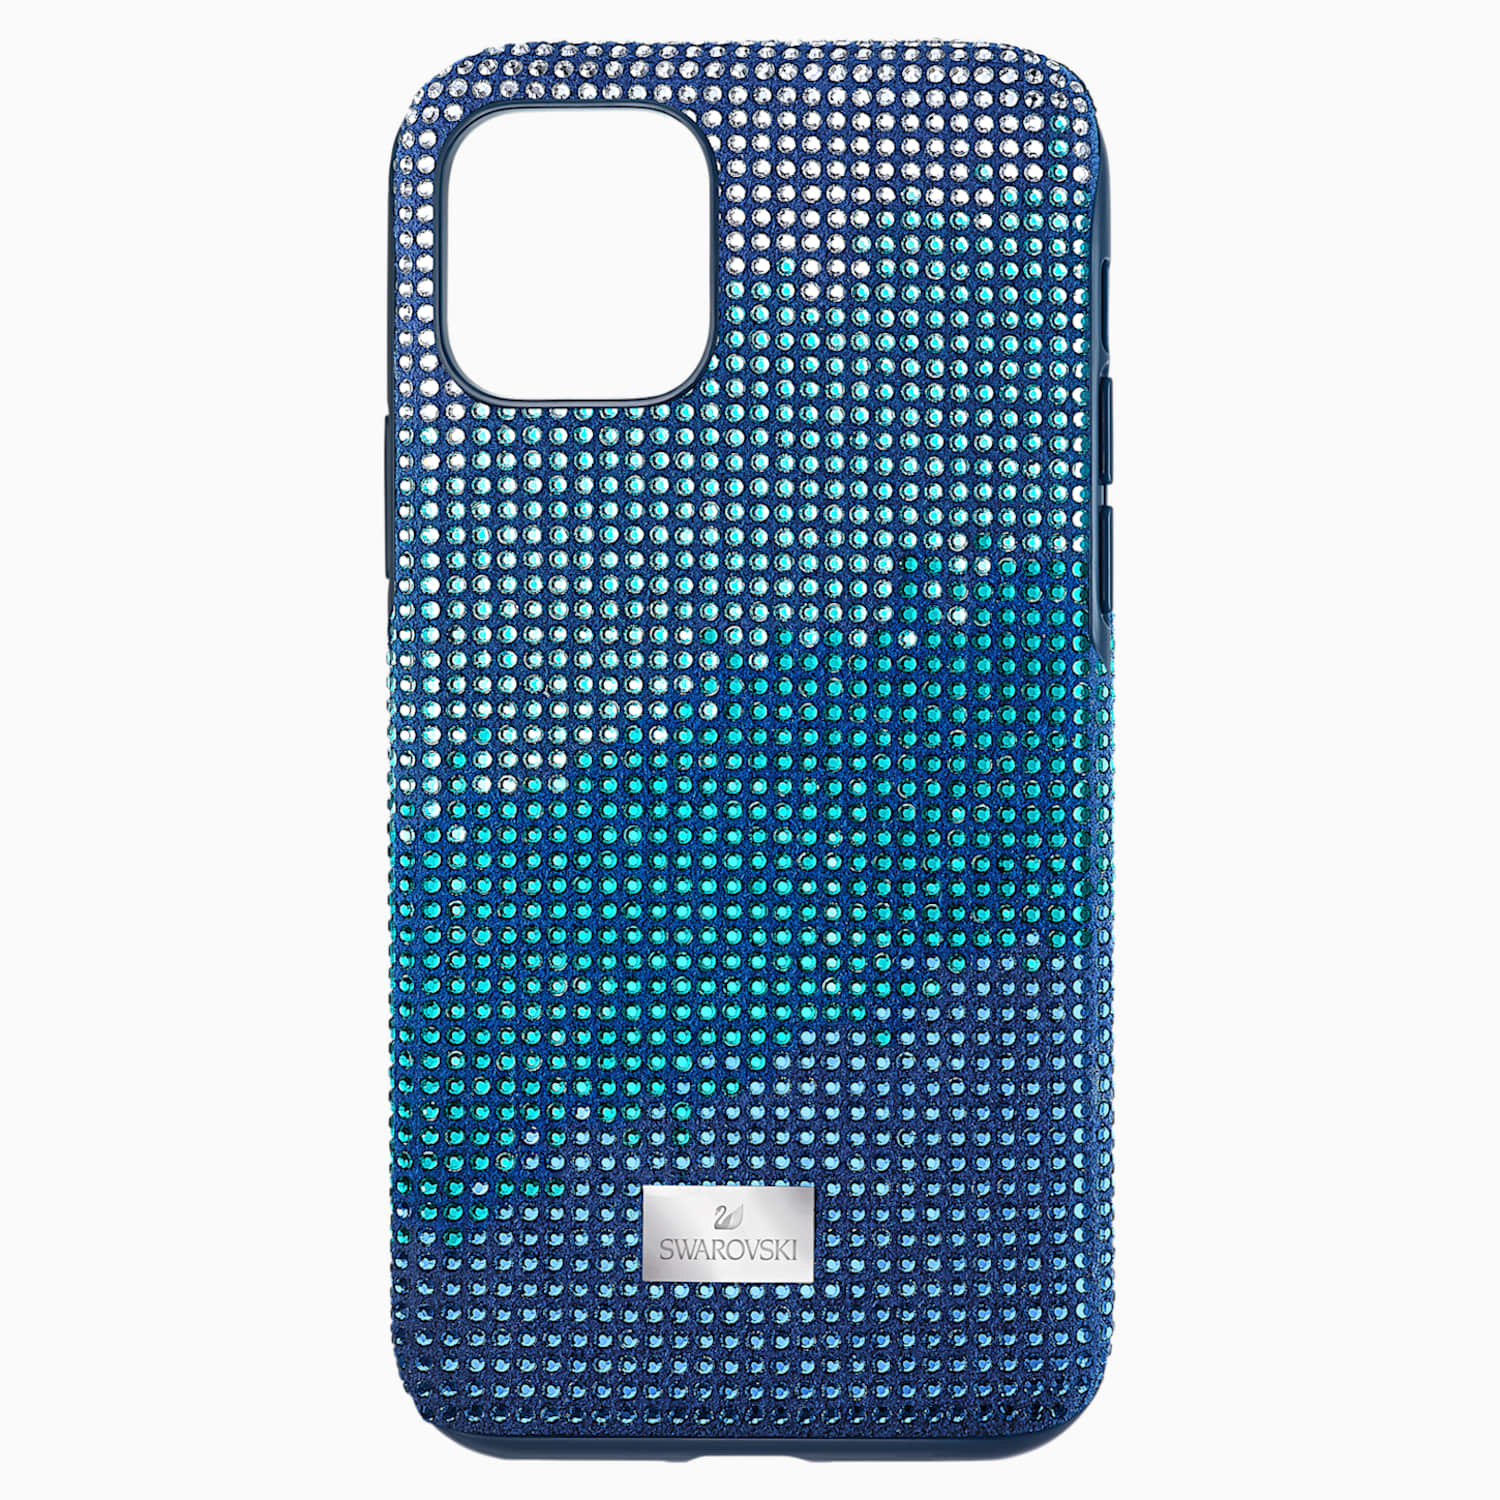 Crystalgram 智能手机防震保护套 Iphone 11 Pro 蓝色 施华洛世奇